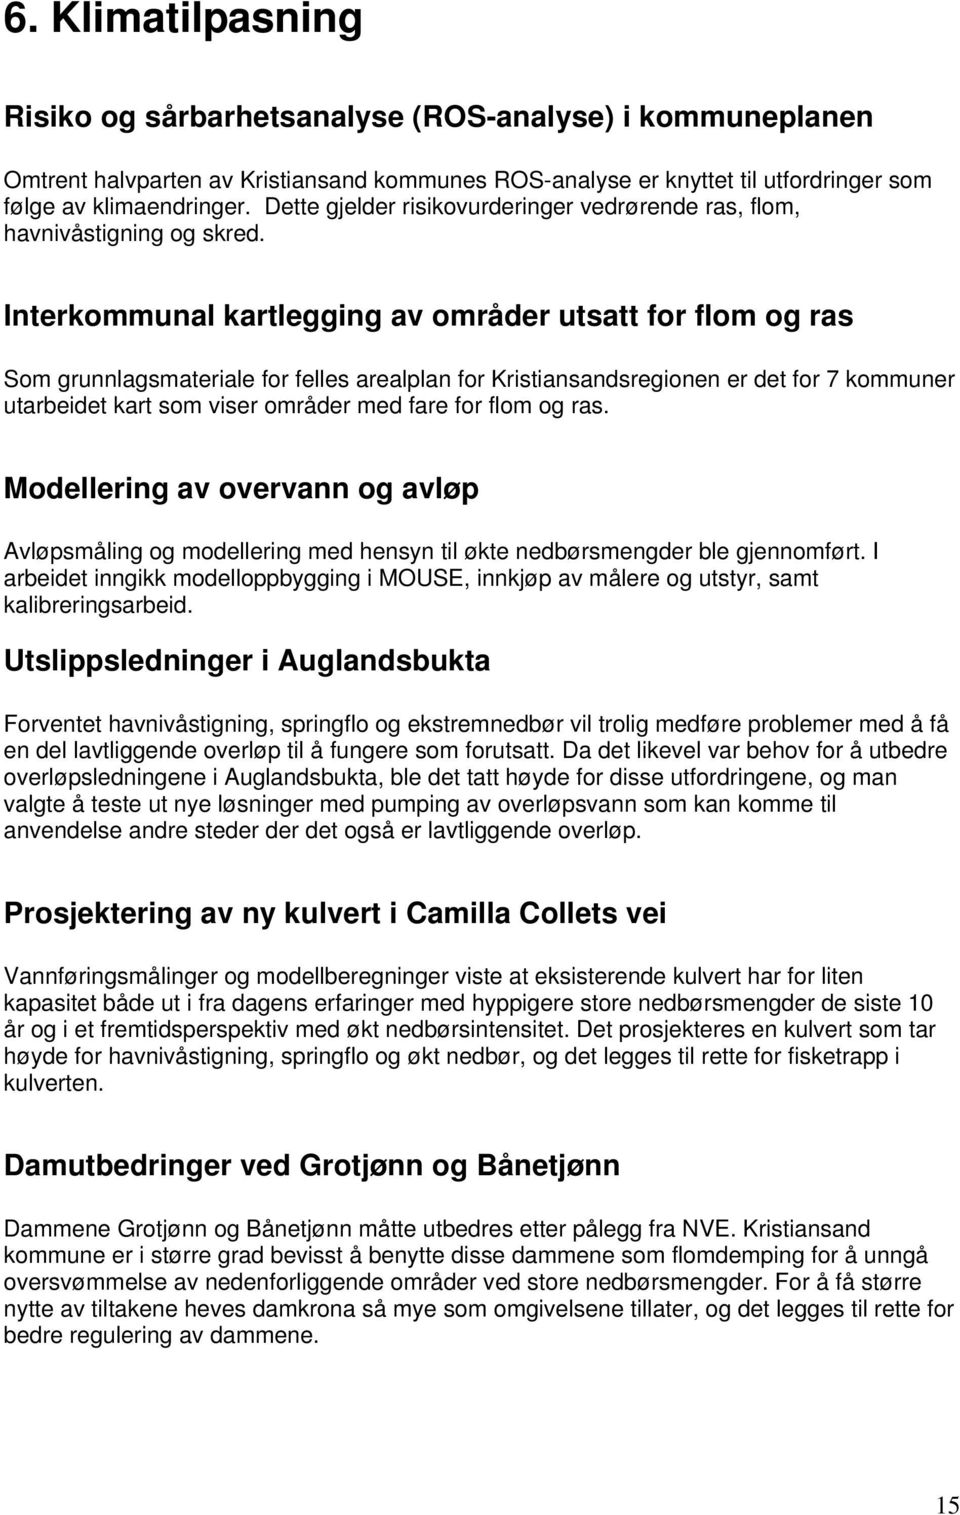 Interkommunal kartlegging av områder utsatt for flom og ras Som grunnlagsmateriale for felles arealplan for Kristiansandsregionen er det for 7 kommuner utarbeidet kart som viser områder med fare for